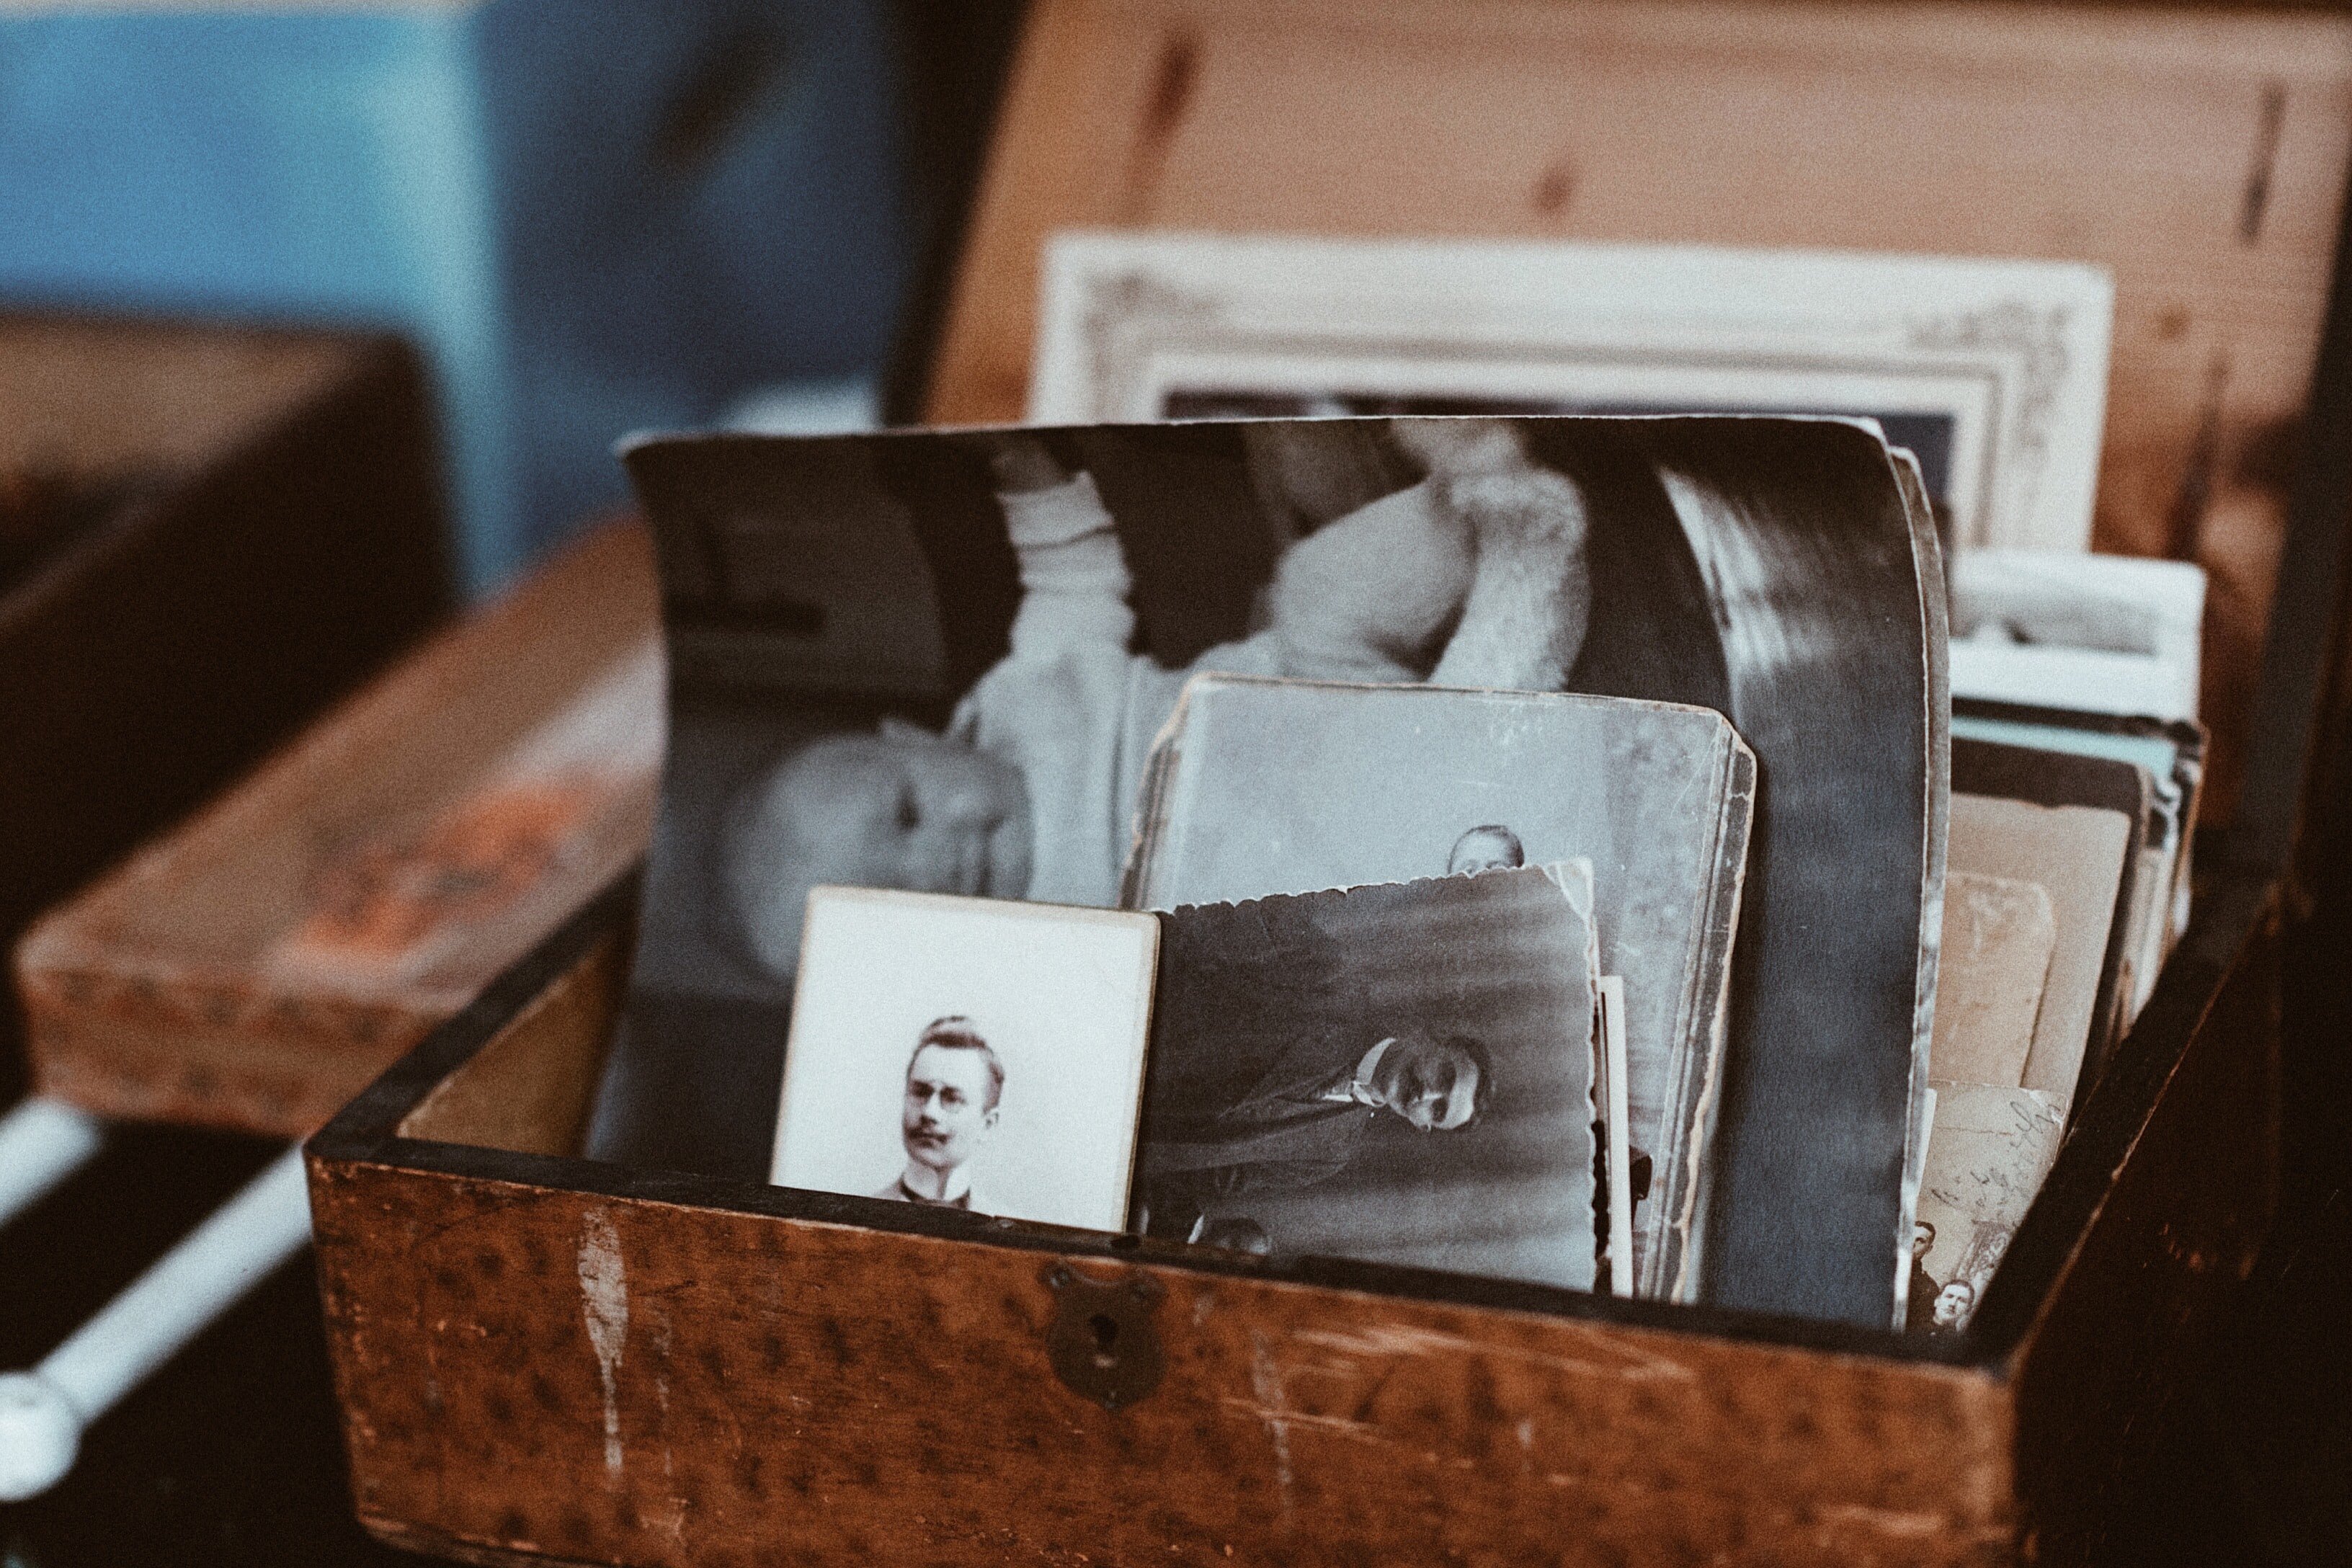 Elizabeth and Eric found old photographs inside the trinket box | Photo: Unsplash